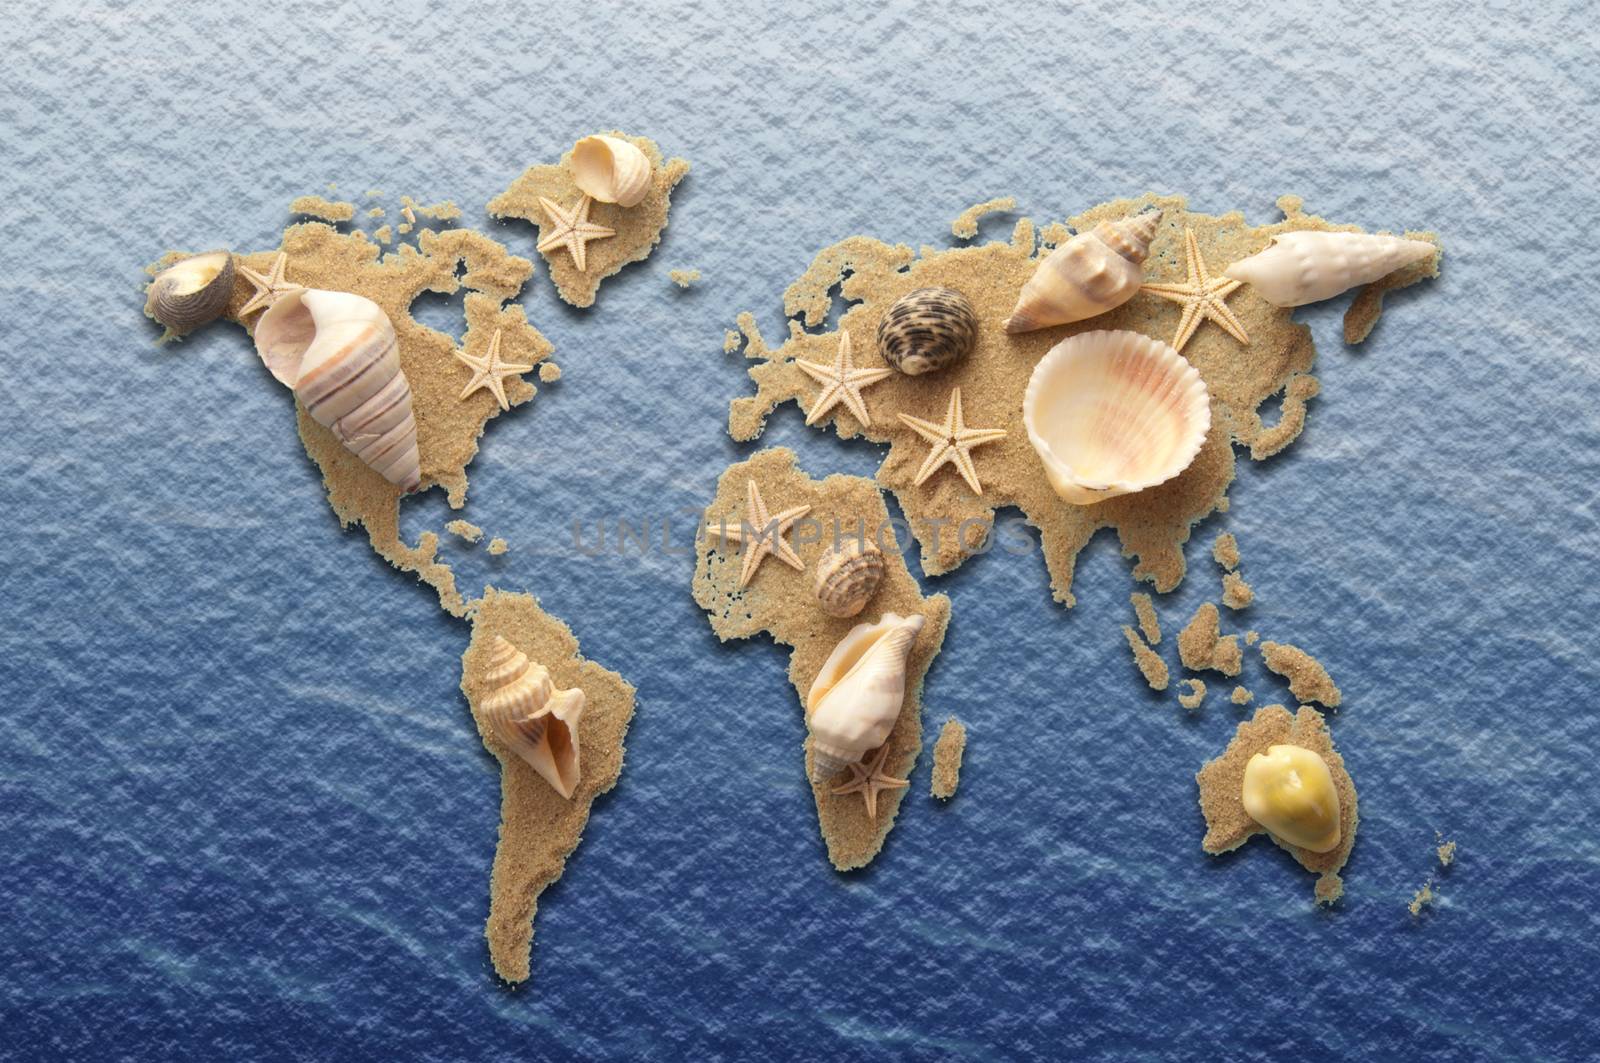 World sea shell map by unikpix